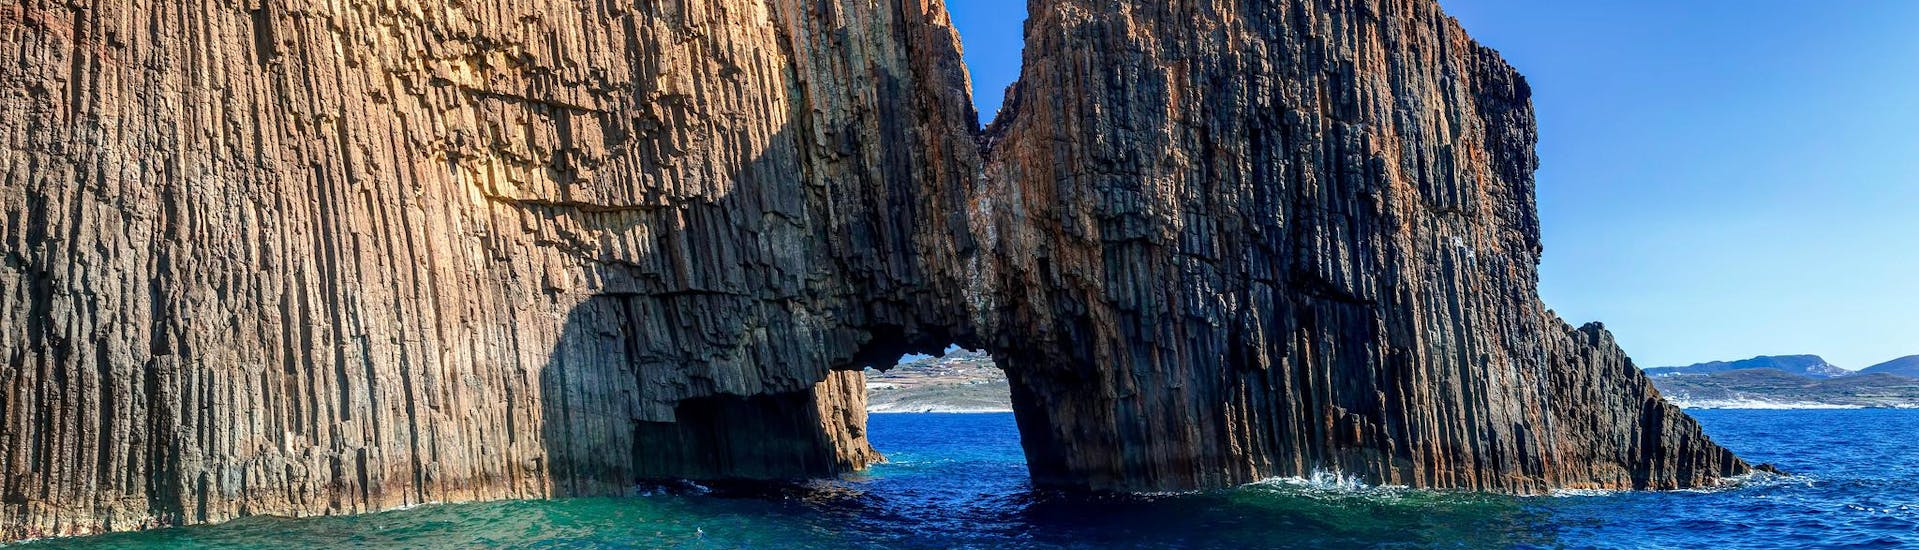 Incroyables îlots rocheux et volcaniques de Glaronissia avec une belle arche, que vous pouvez voir lors d'une excursion en bateau sur l'île de Milos.